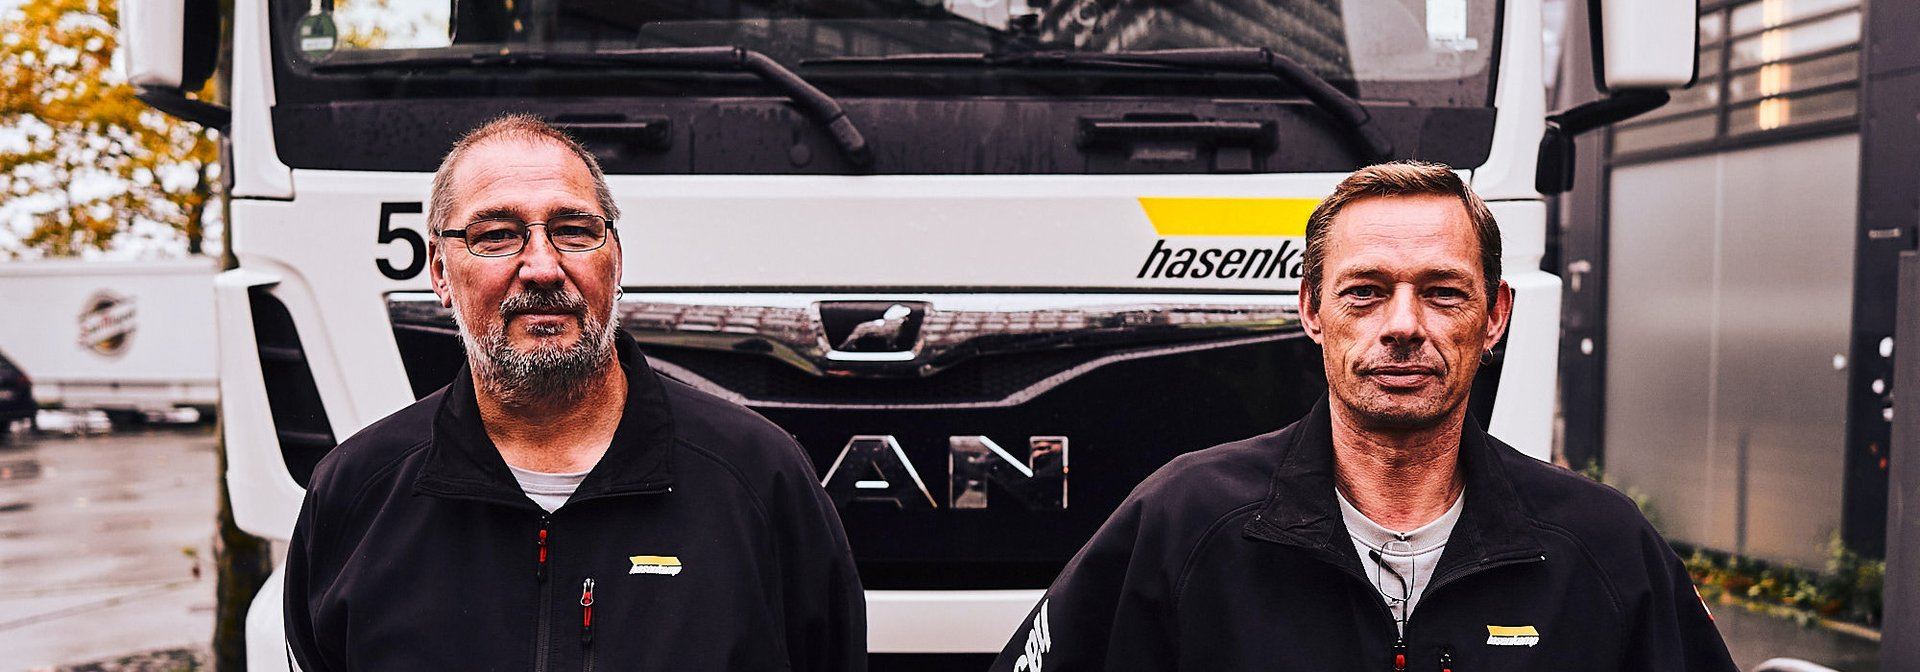 Zwei hasenkamp Mitarbeiter stehen vor ihrem LKW und lächeln in die Kamera.